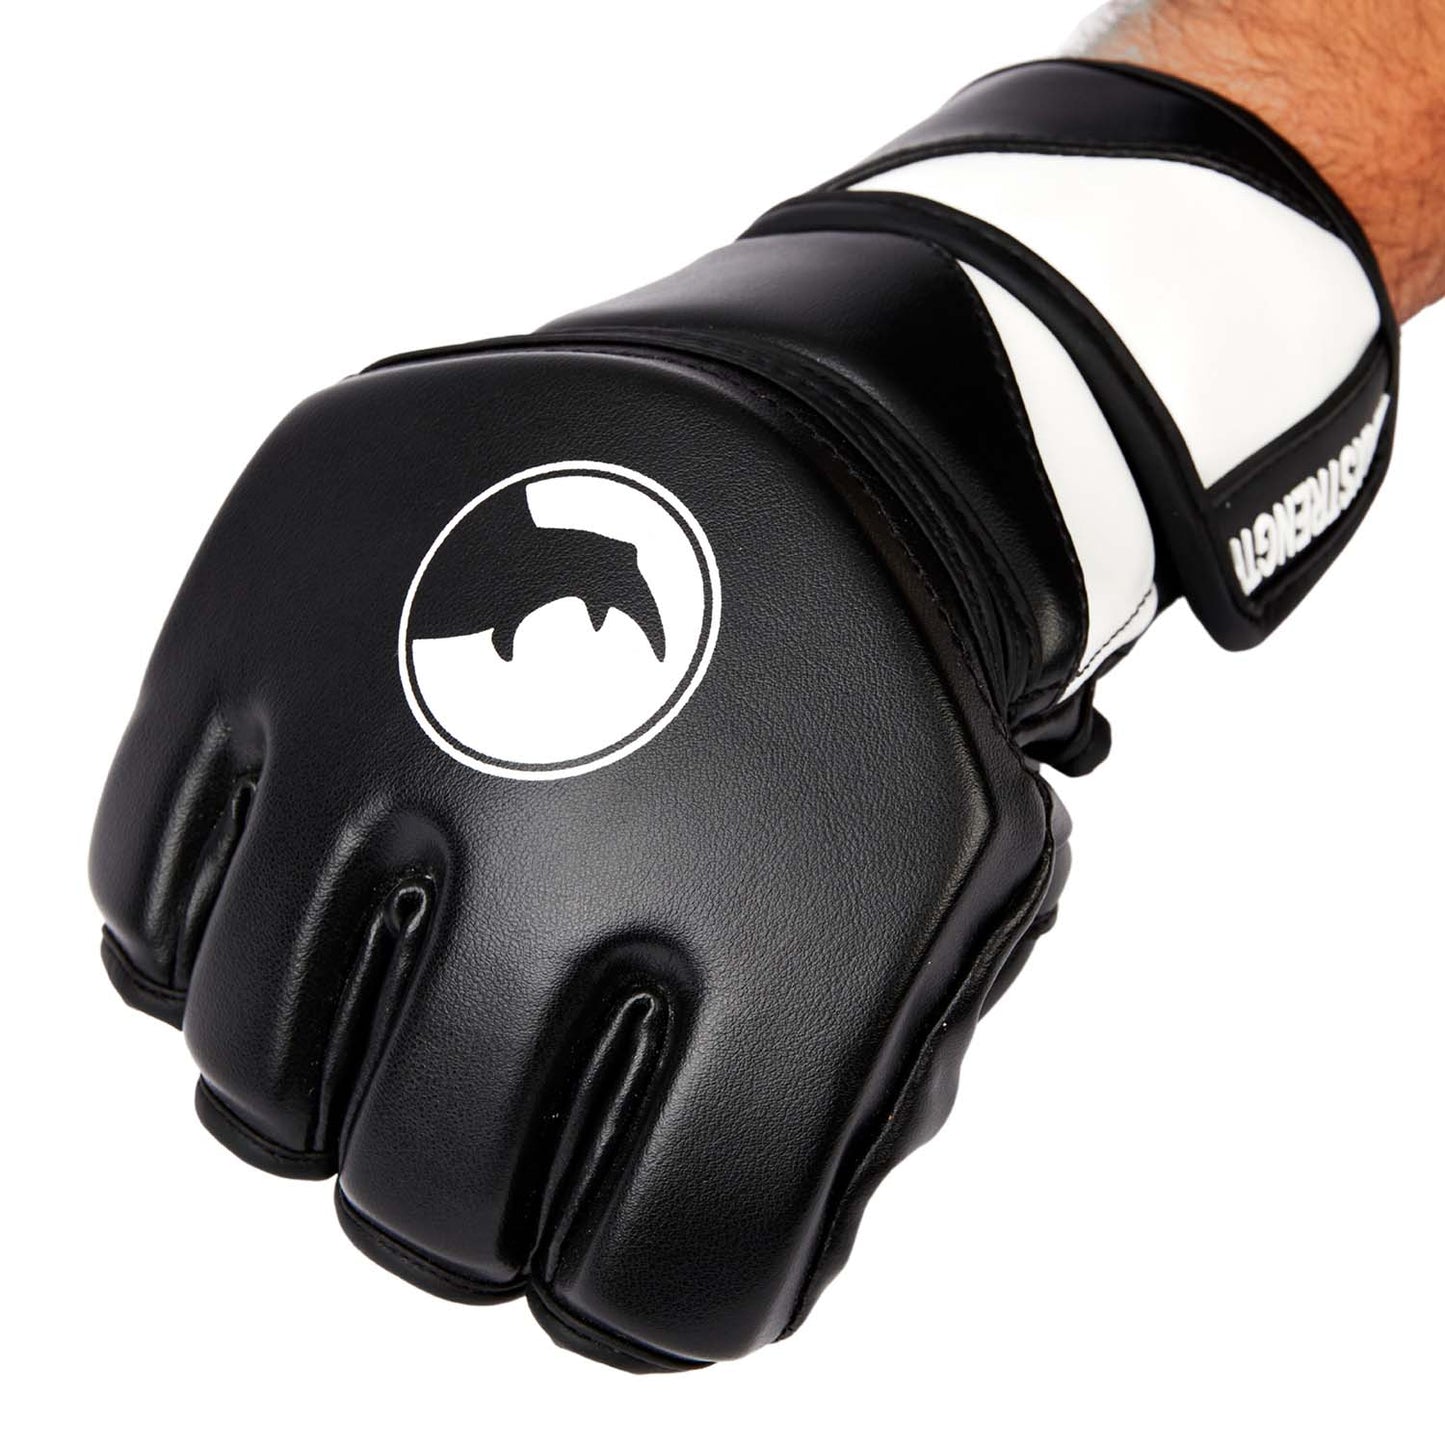 Black mma gloves